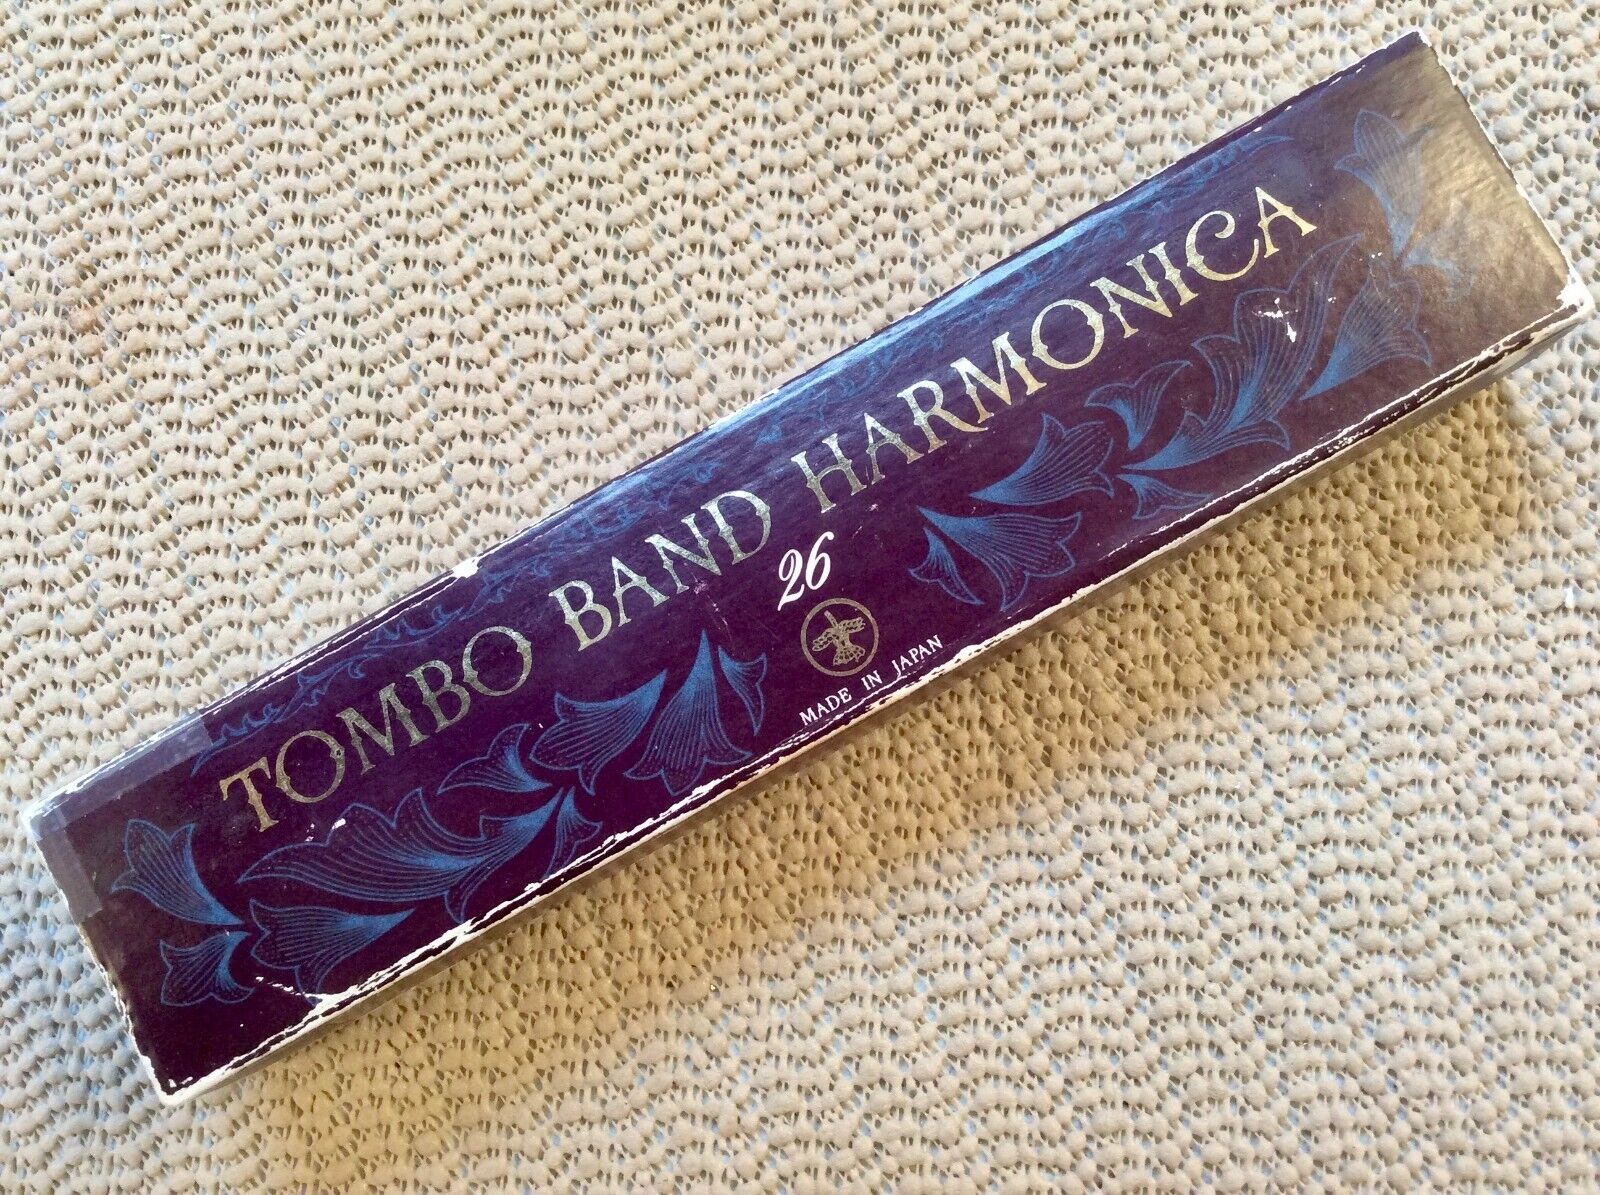 Harmonica Tombo 3326 tremolo, key of C (refurbished) | AlbertHarp